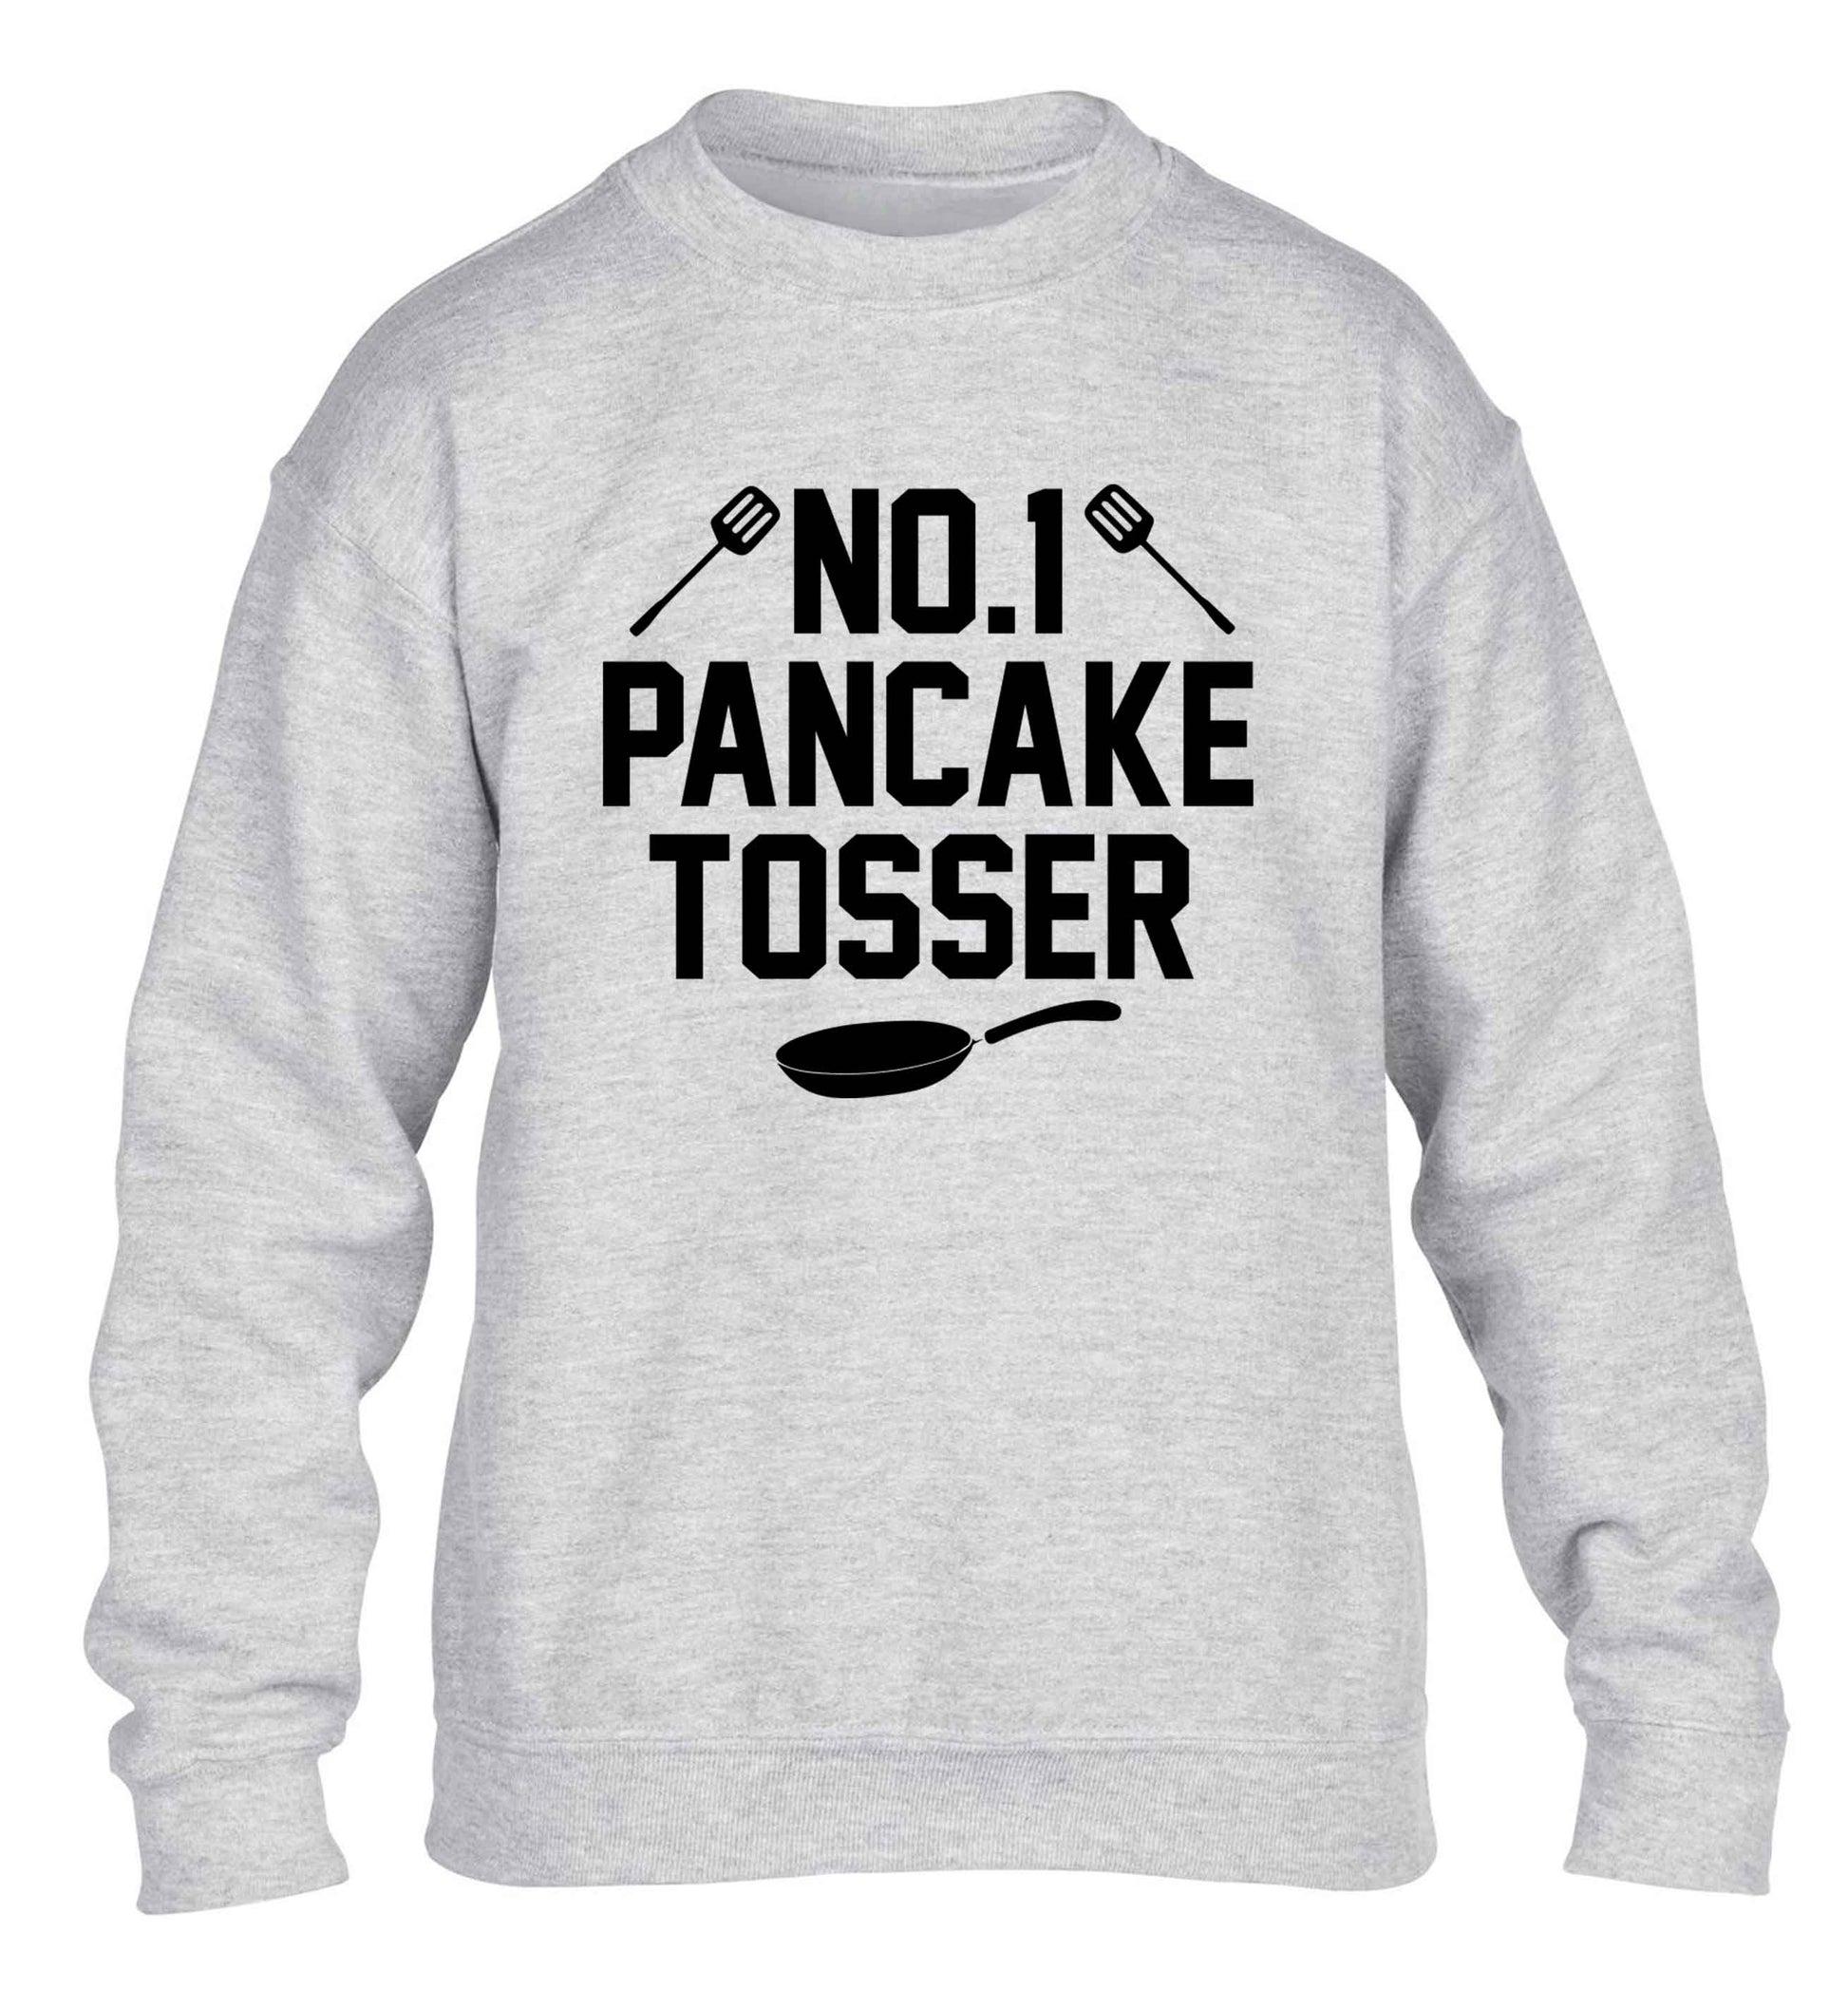 No.1 Pancake tosser children's grey sweater 12-13 Years